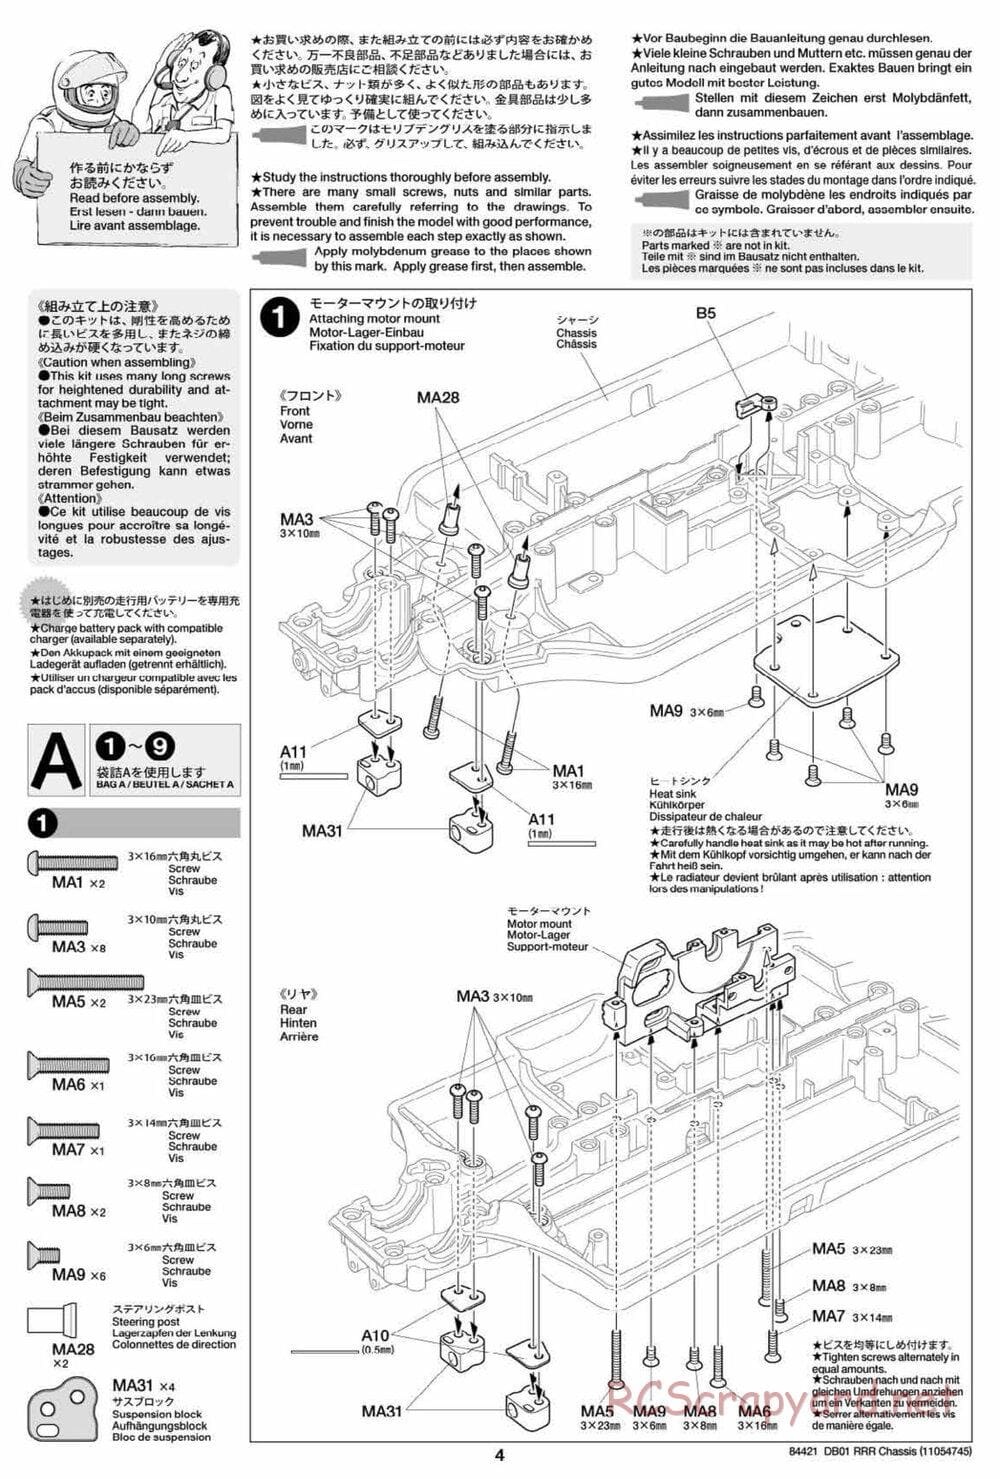 Tamiya - DB-01 RRR Chassis - Manual - Page 4